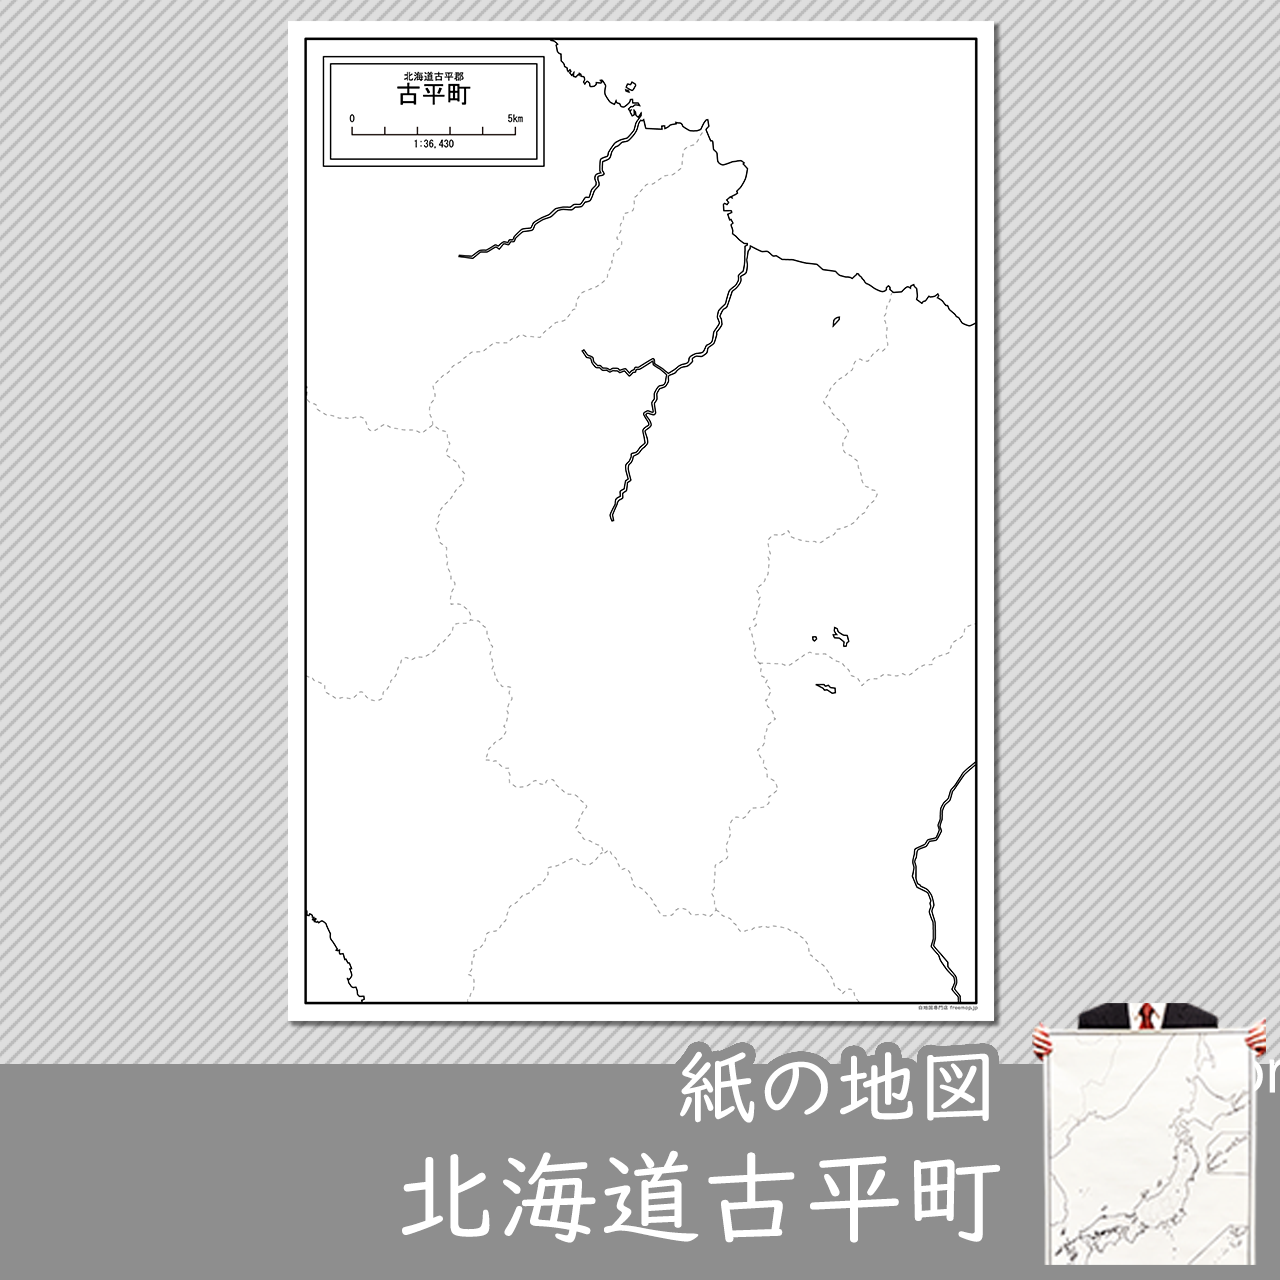 古平町の紙の白地図のサムネイル